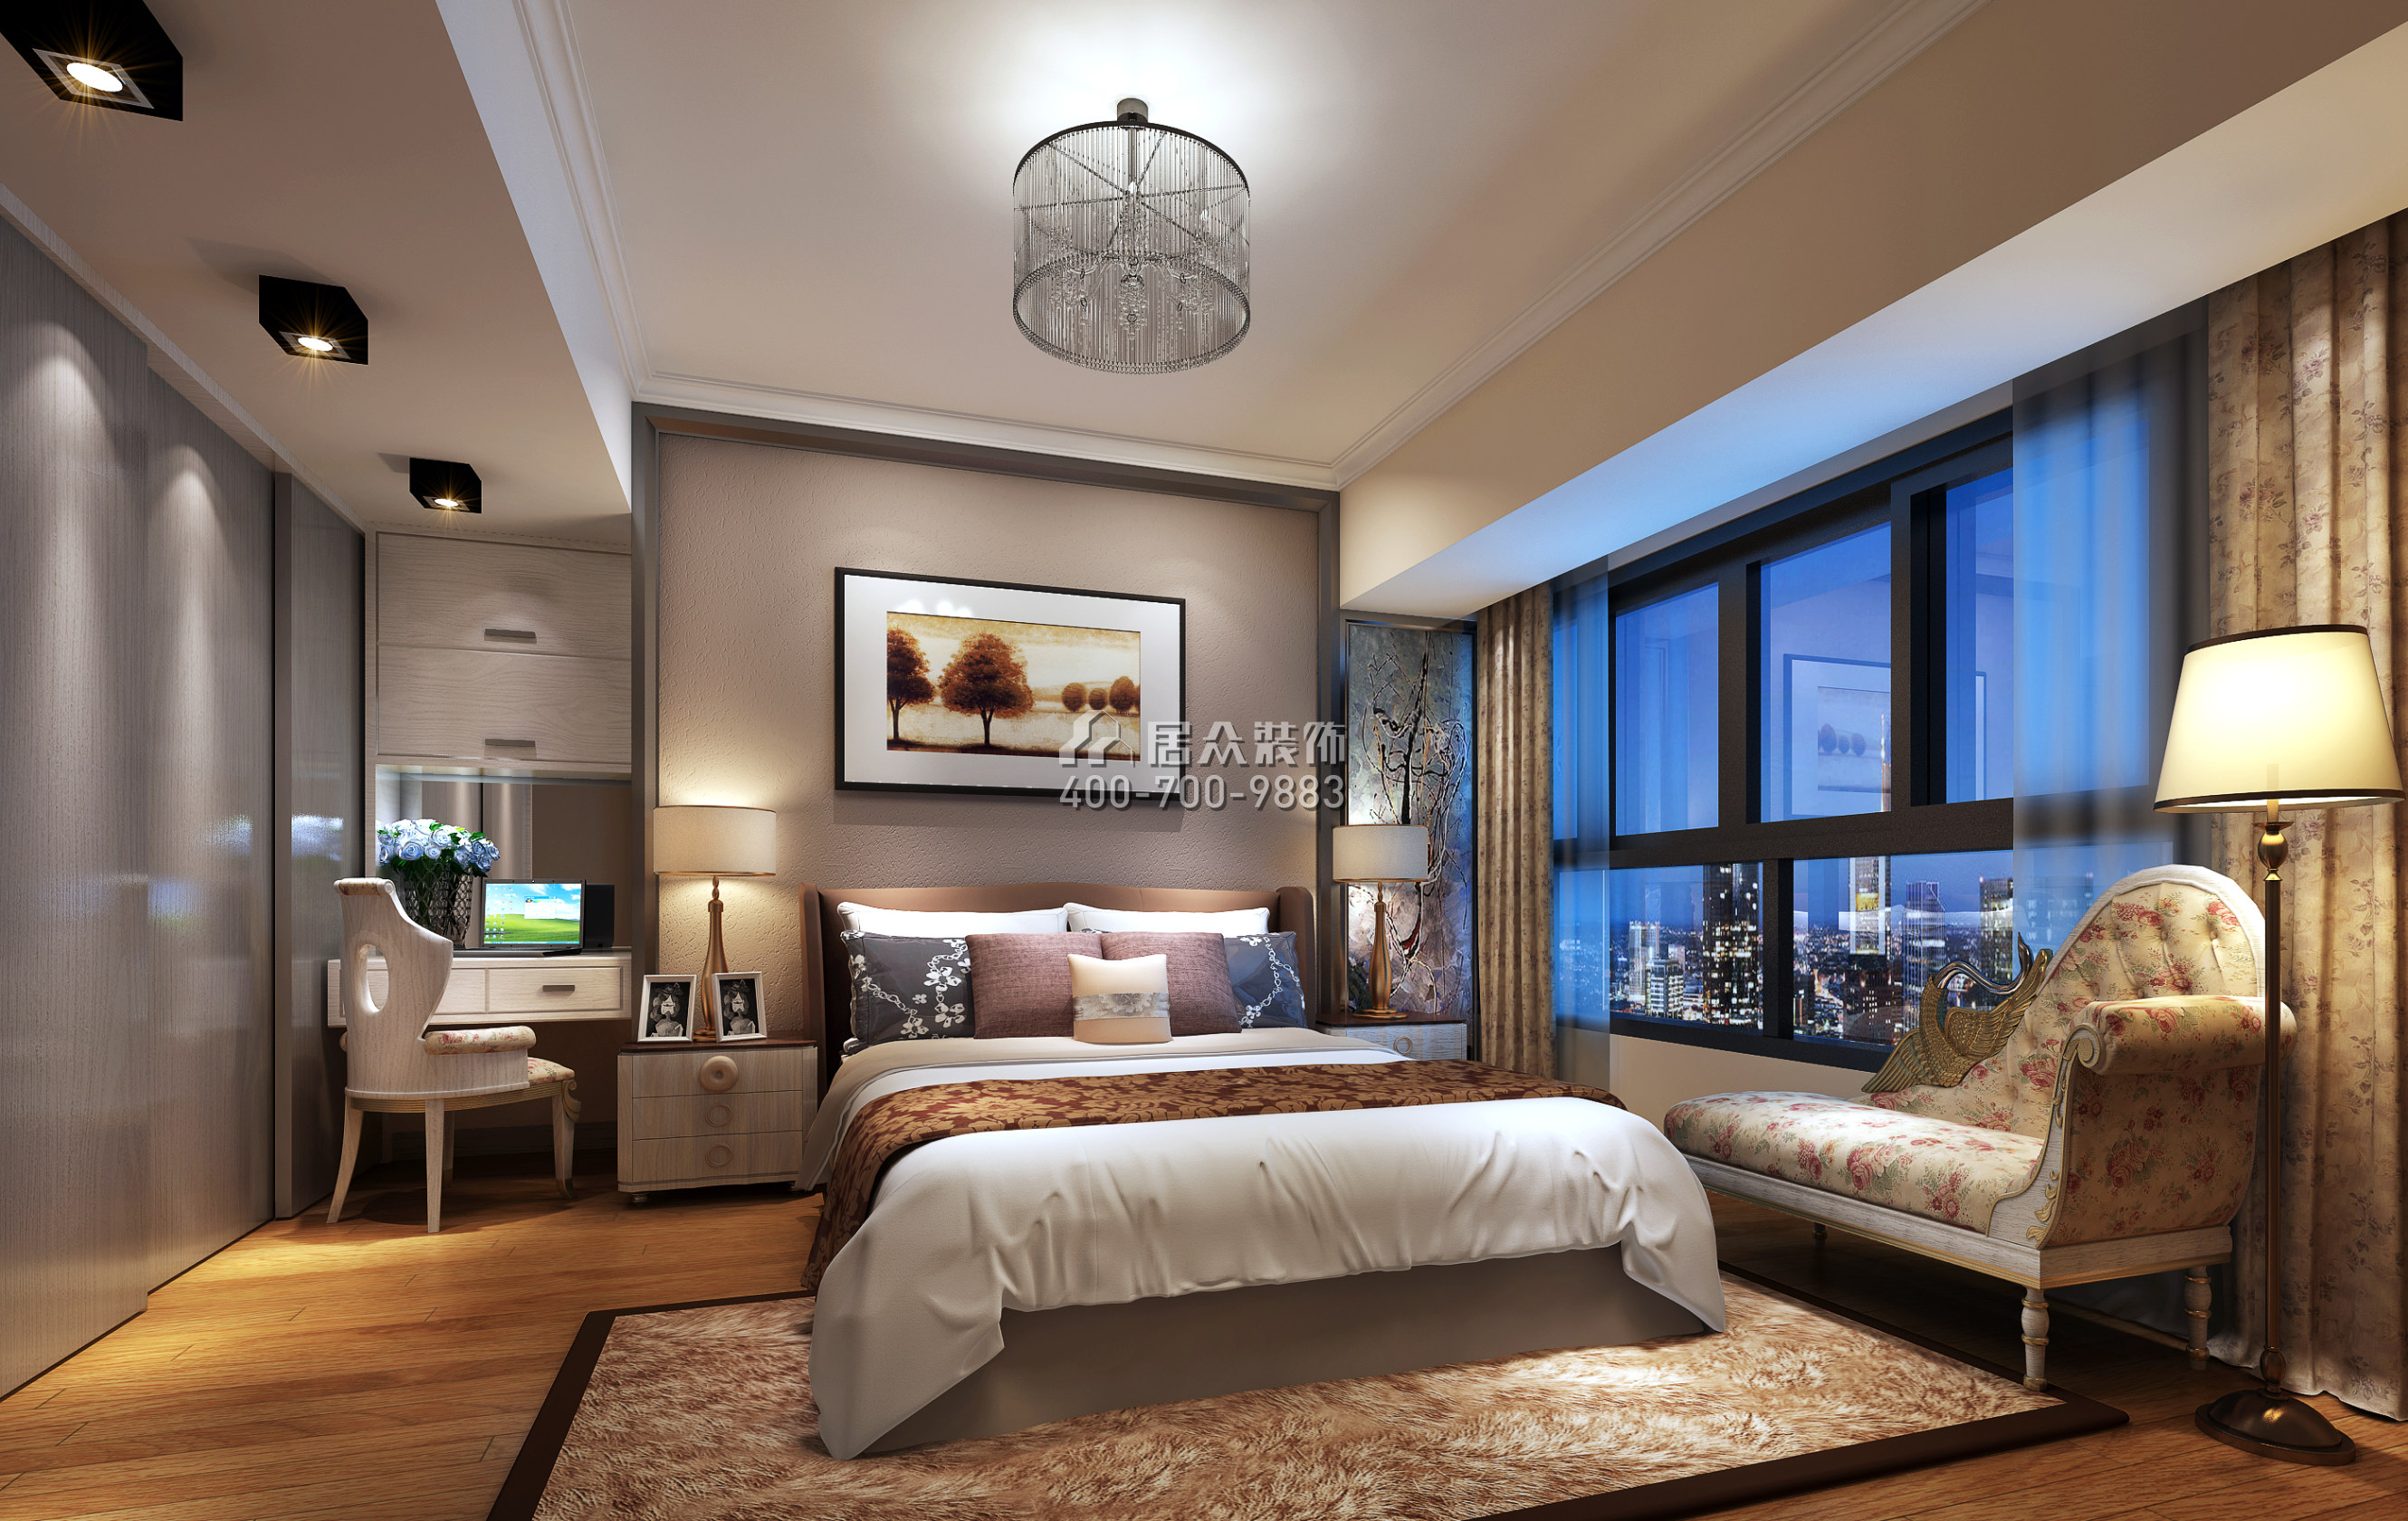 大运城邦一期176平方米现代简约风格平层户型卧室装修效果图